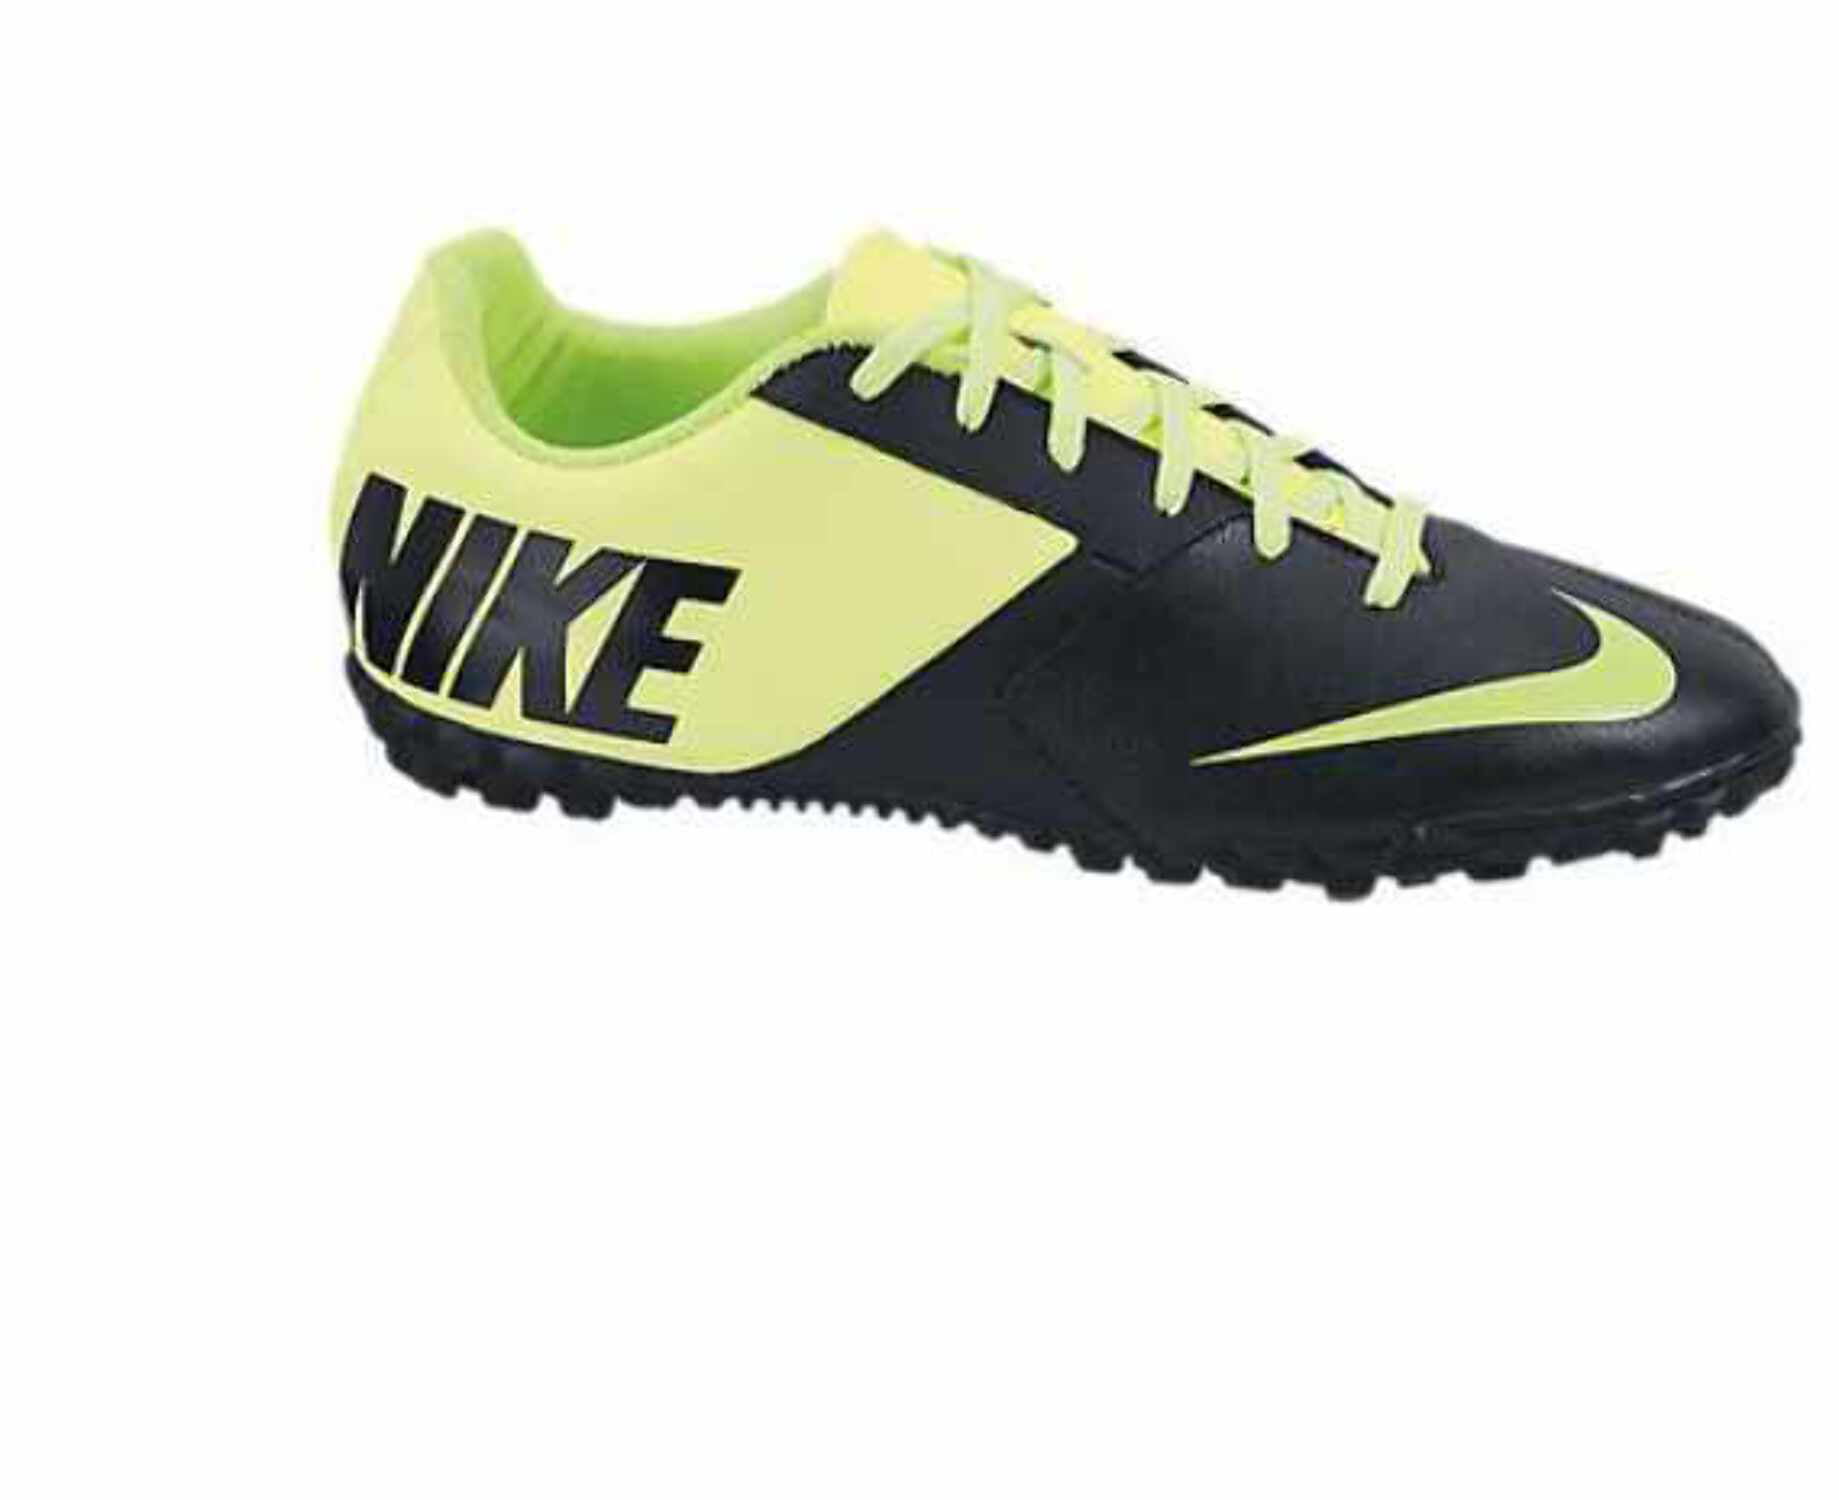 Nike Bomba TF Turf Shoes - Black/Volt 10.5 - Walmart.com